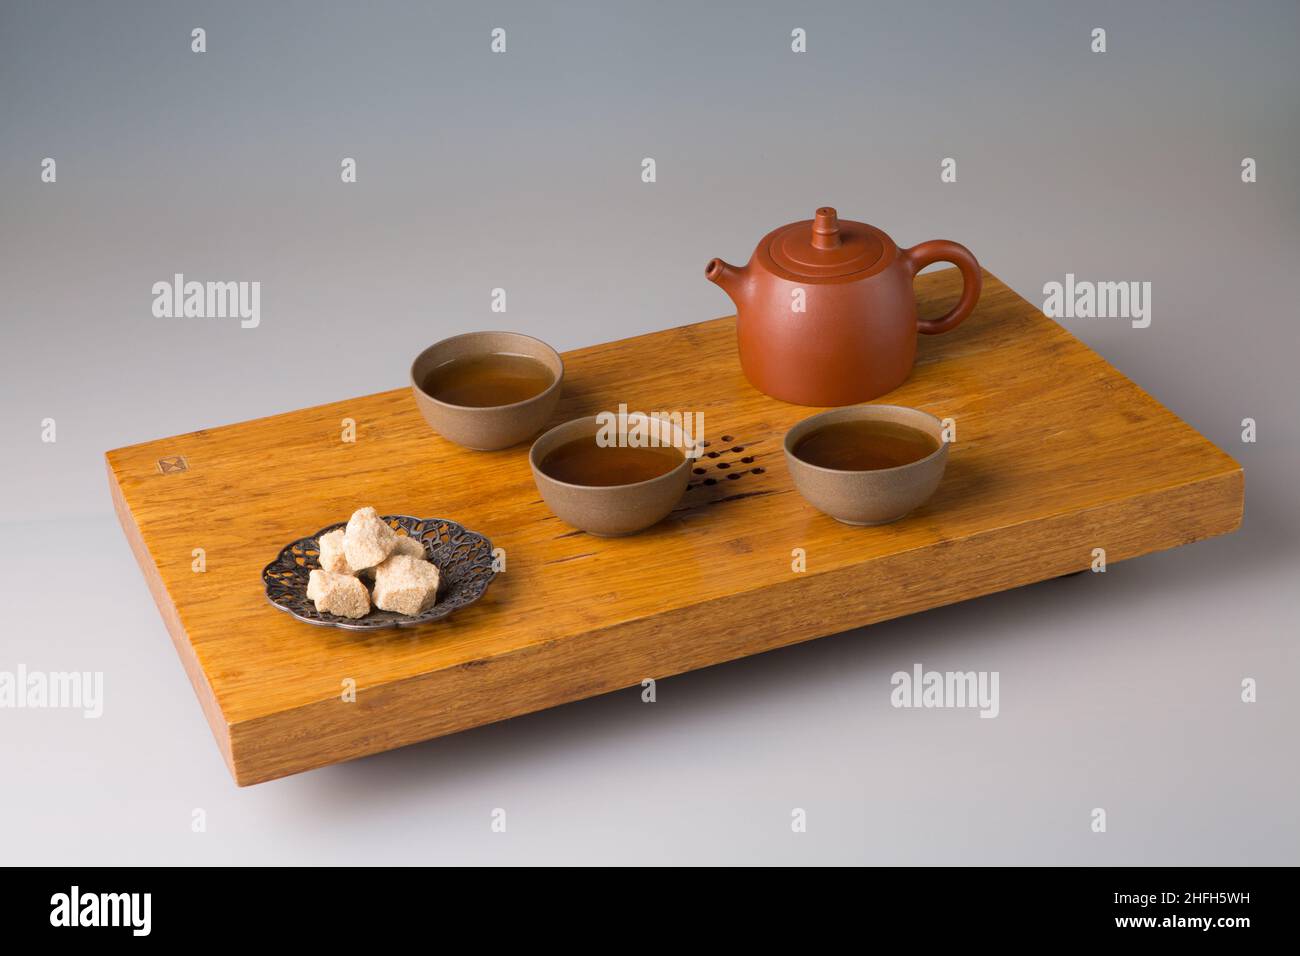 Une théière et trois tasses de thé pu-erh fraîchement préparé, sucre pressé.Un set sur une table en bois pour les cérémonies du thé. Banque D'Images